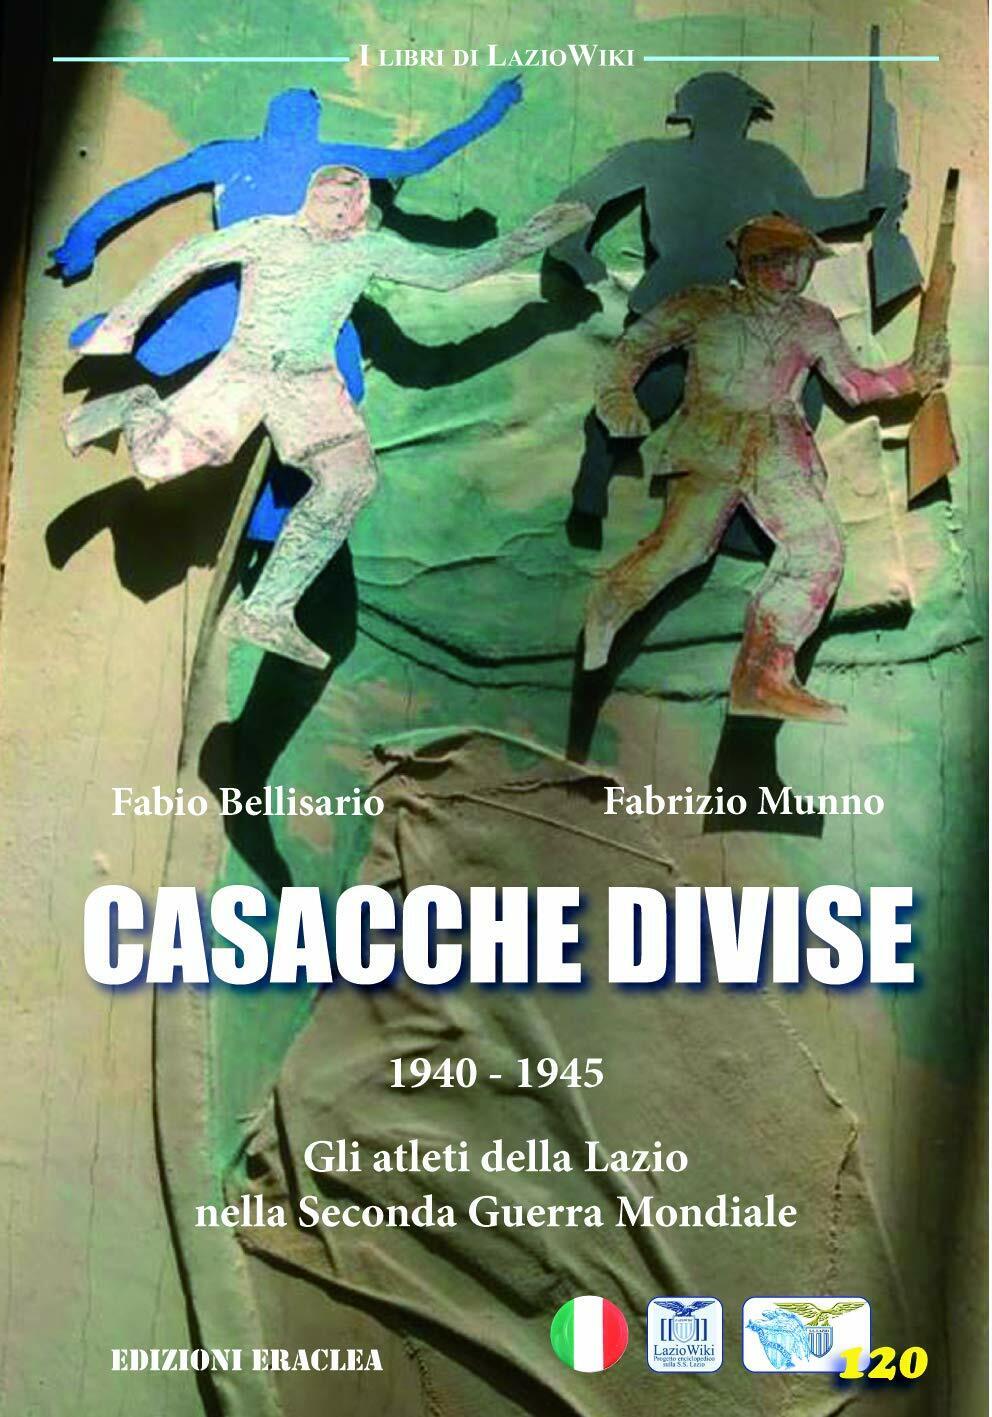 Casacche divise - Fabio Bellisario, Fabrizio Munno - Eraclea, 2020